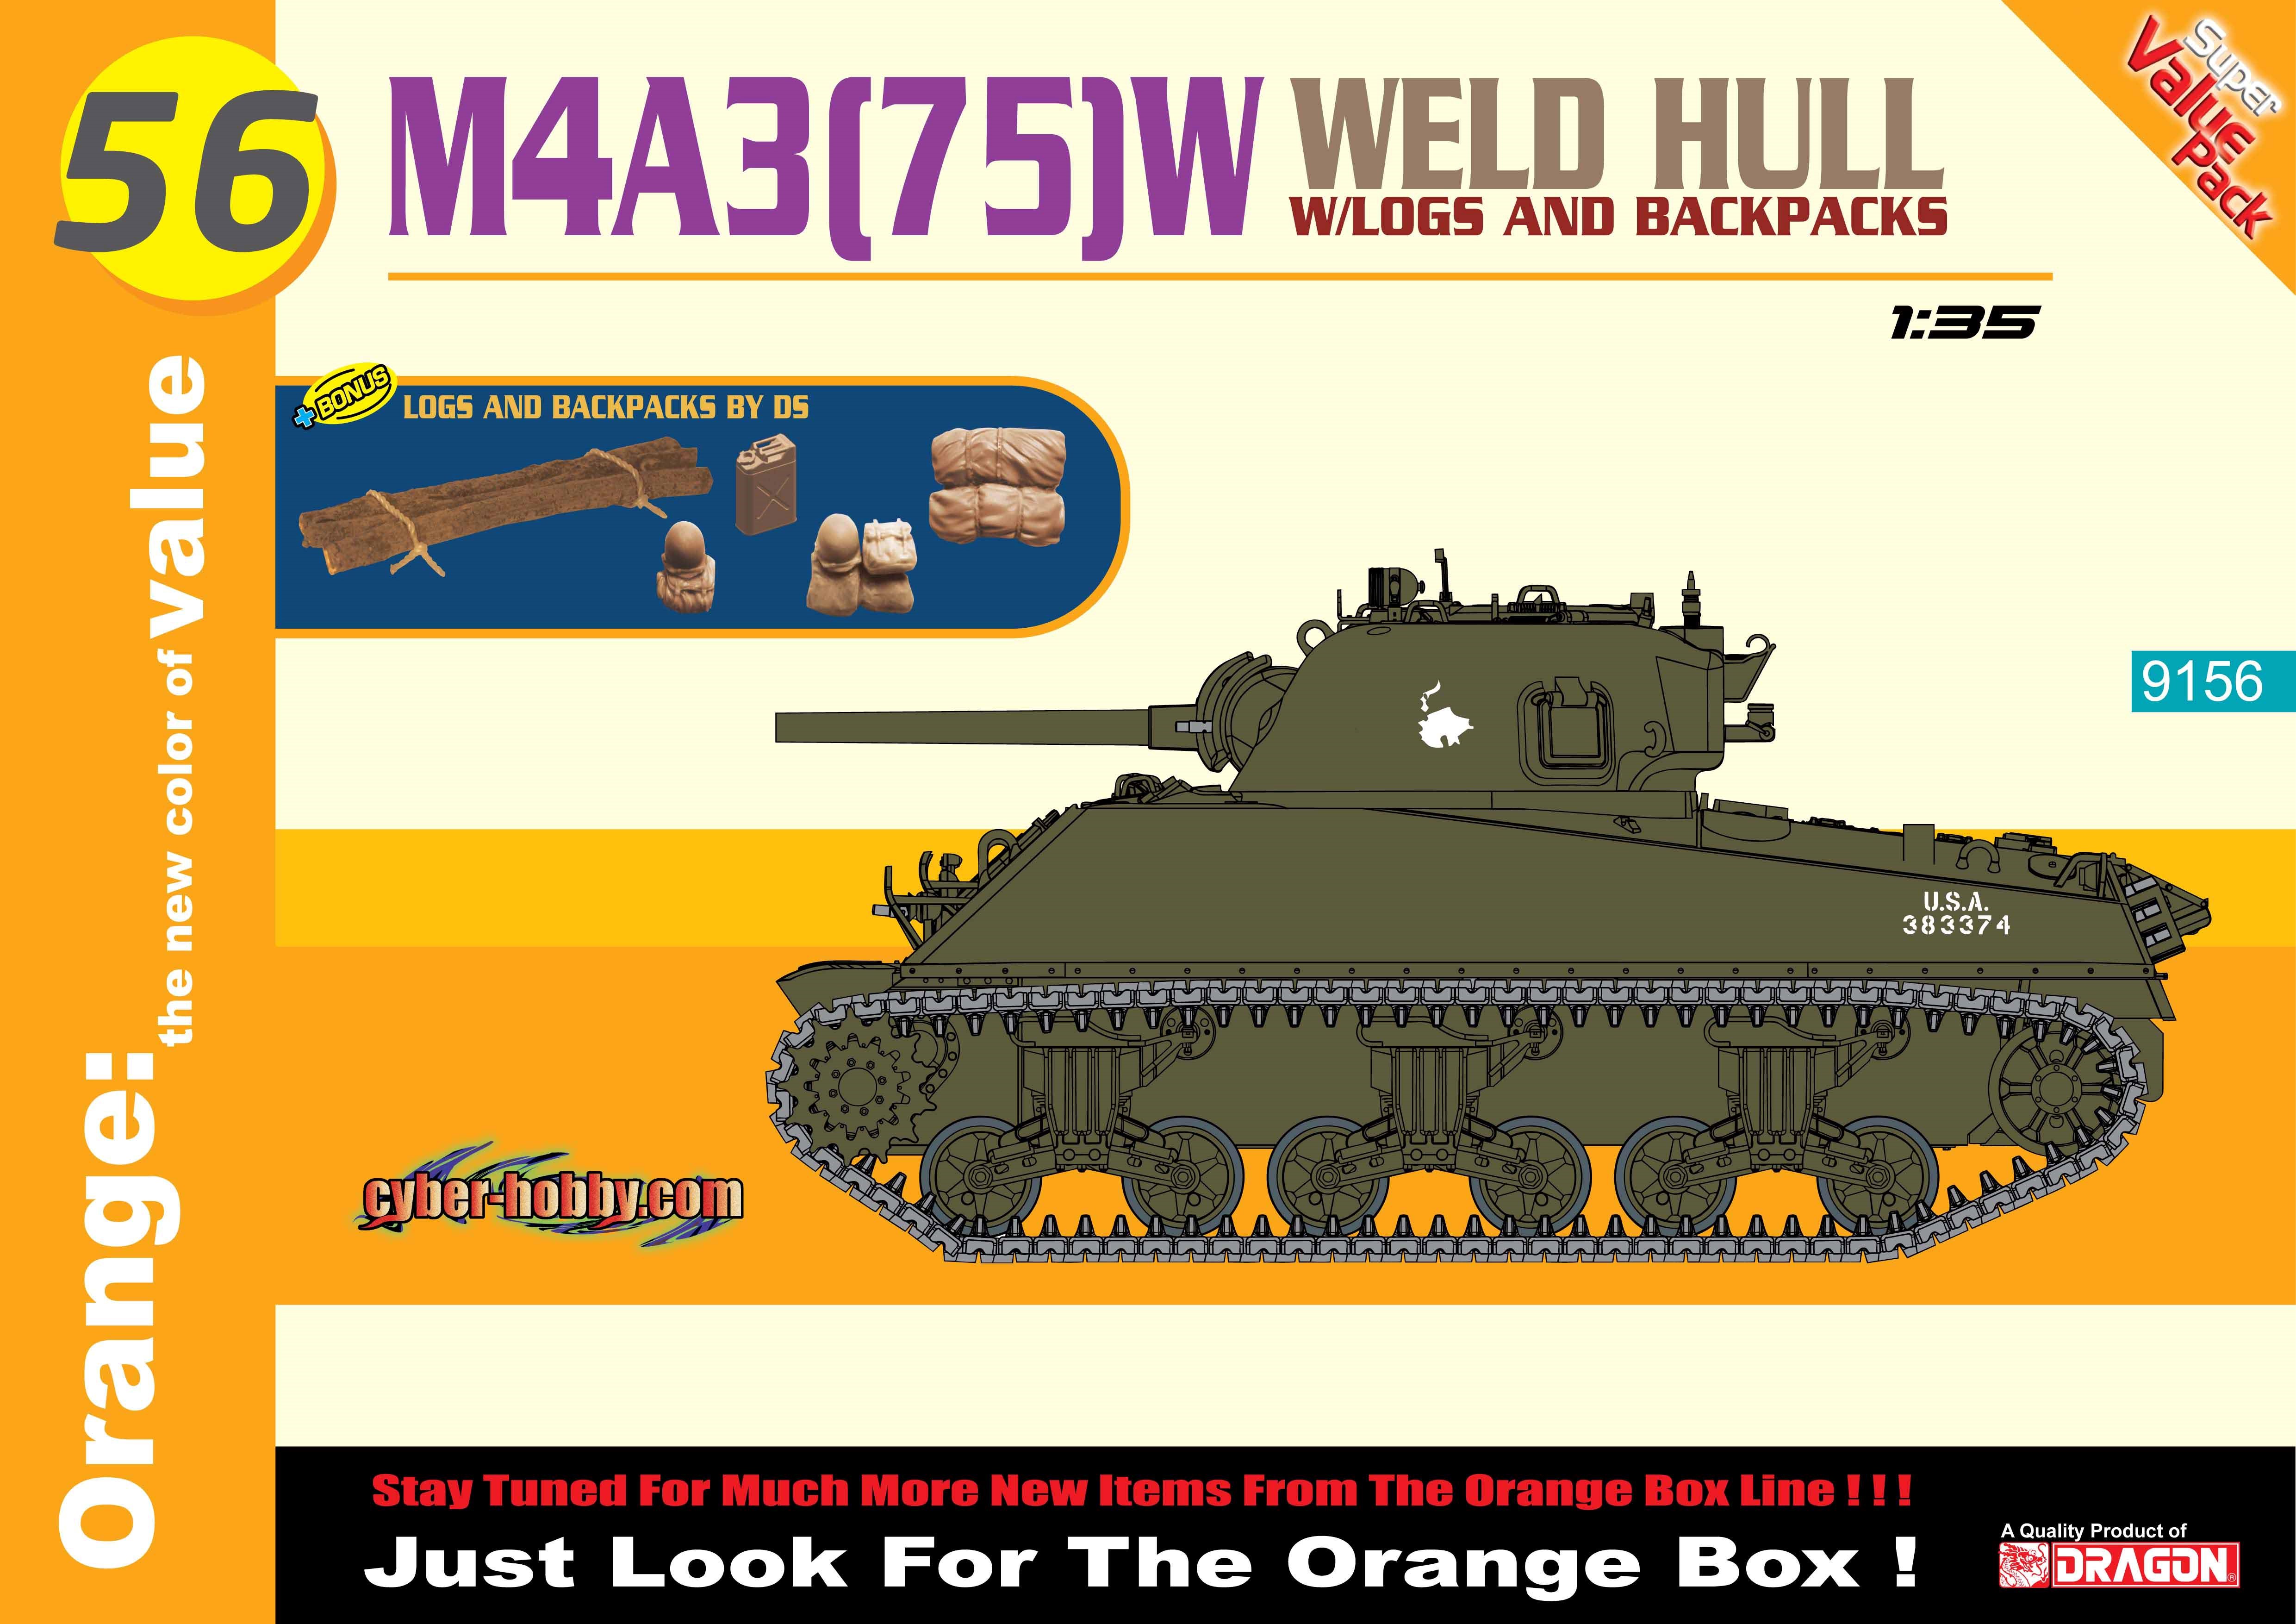 9156  техника и вооружение  M4A3 (75)W Weld Hull + Logs And Backpacks (1:35)